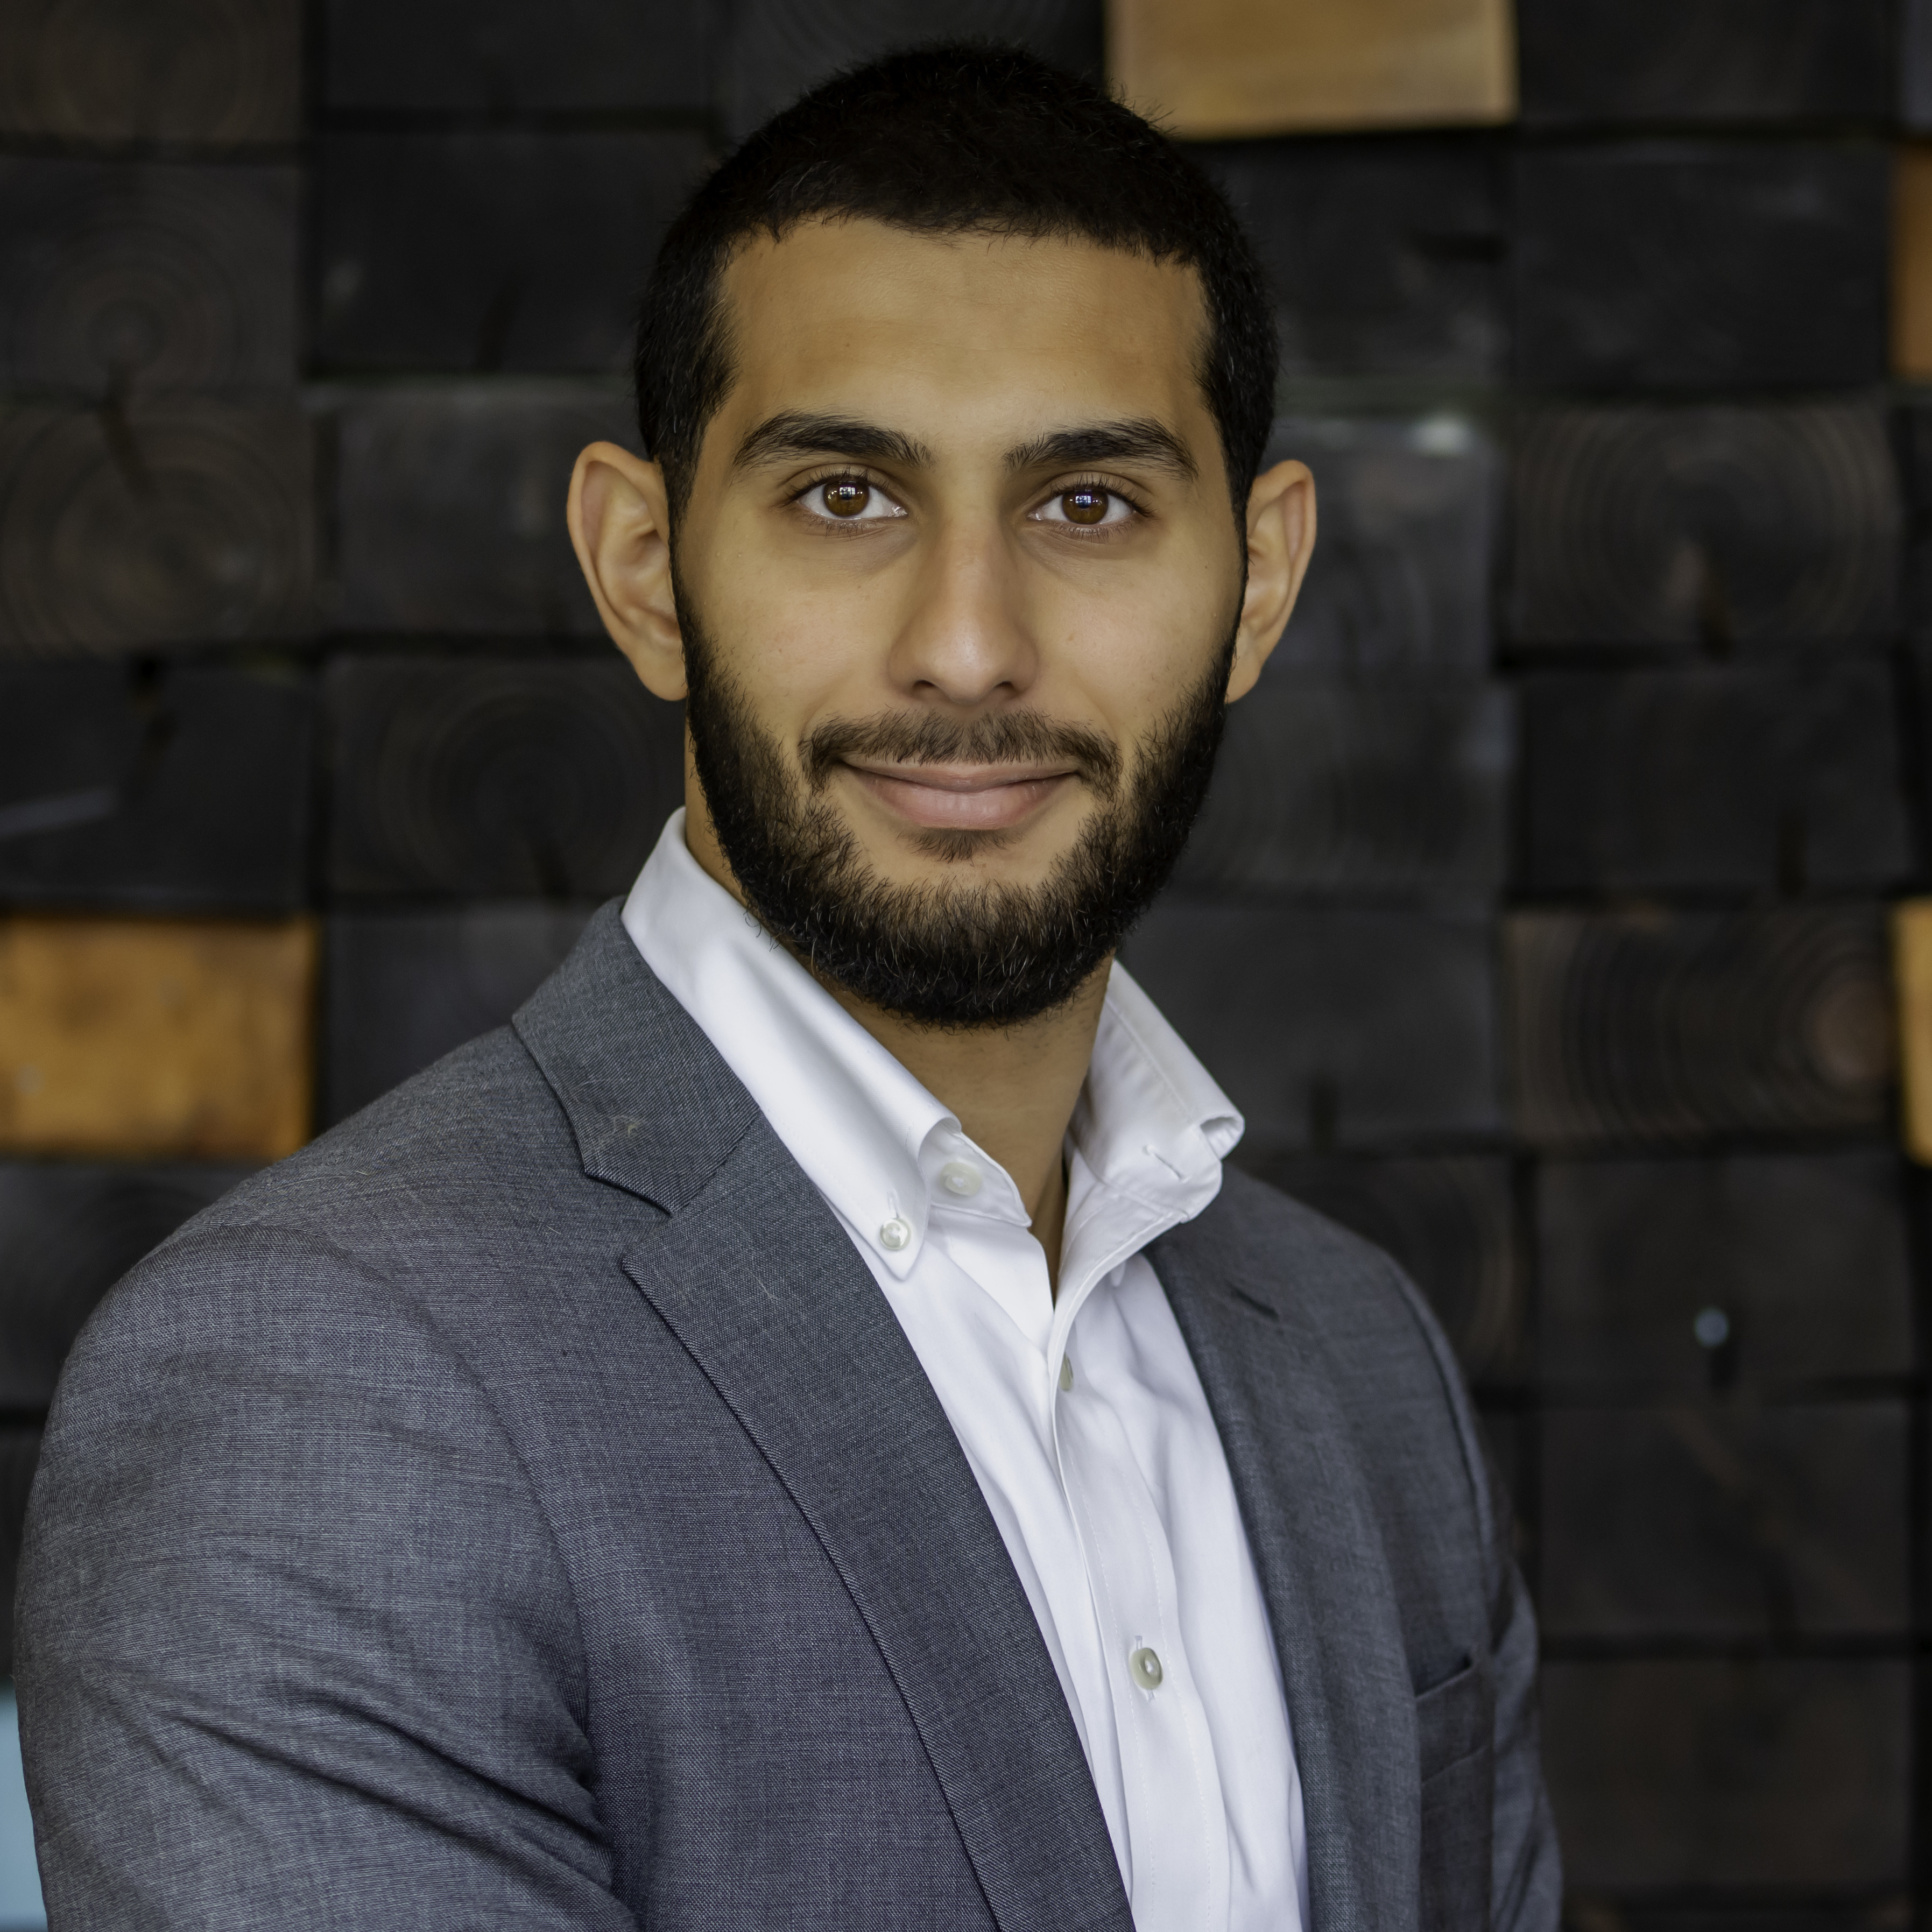 Ahmad Hammad, mHUB 2025 MedTech Accelerator Program Manager